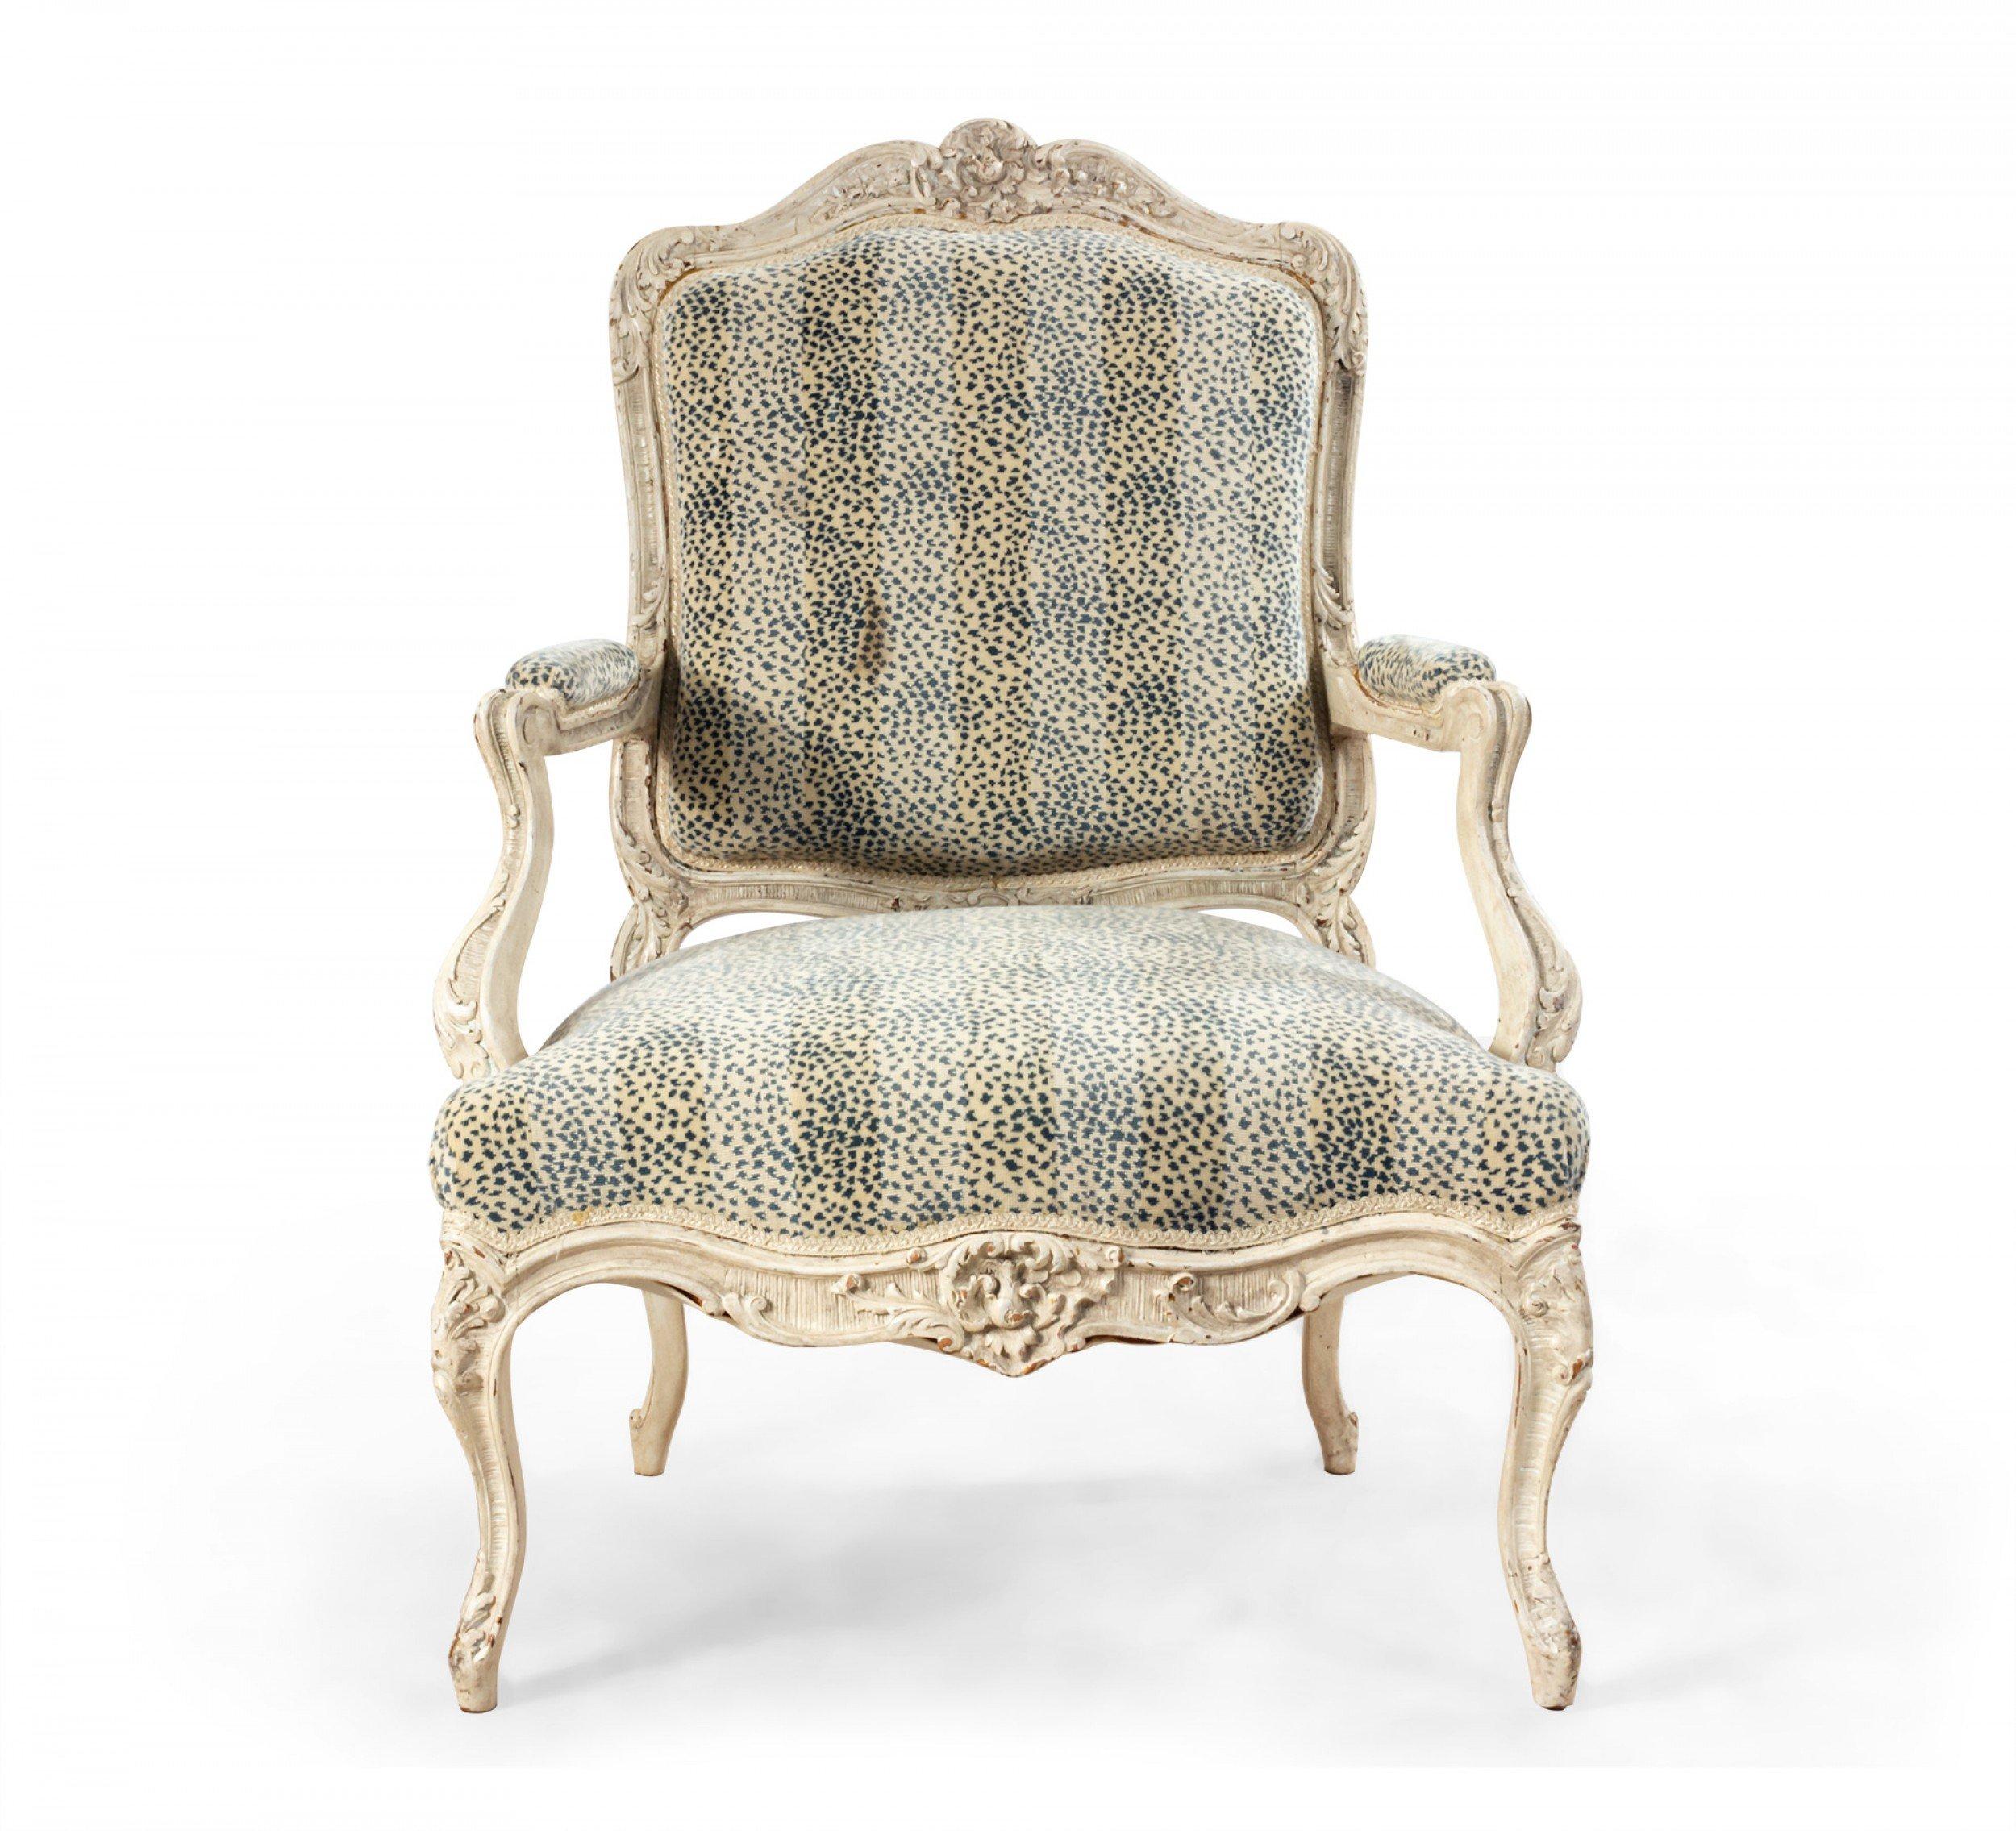 Zwei übergroße Sessel im französischen Louis XV-Stil, weiß bemalt und geschnitzt, mit blau und grau getupften und gestreiften Polstern.